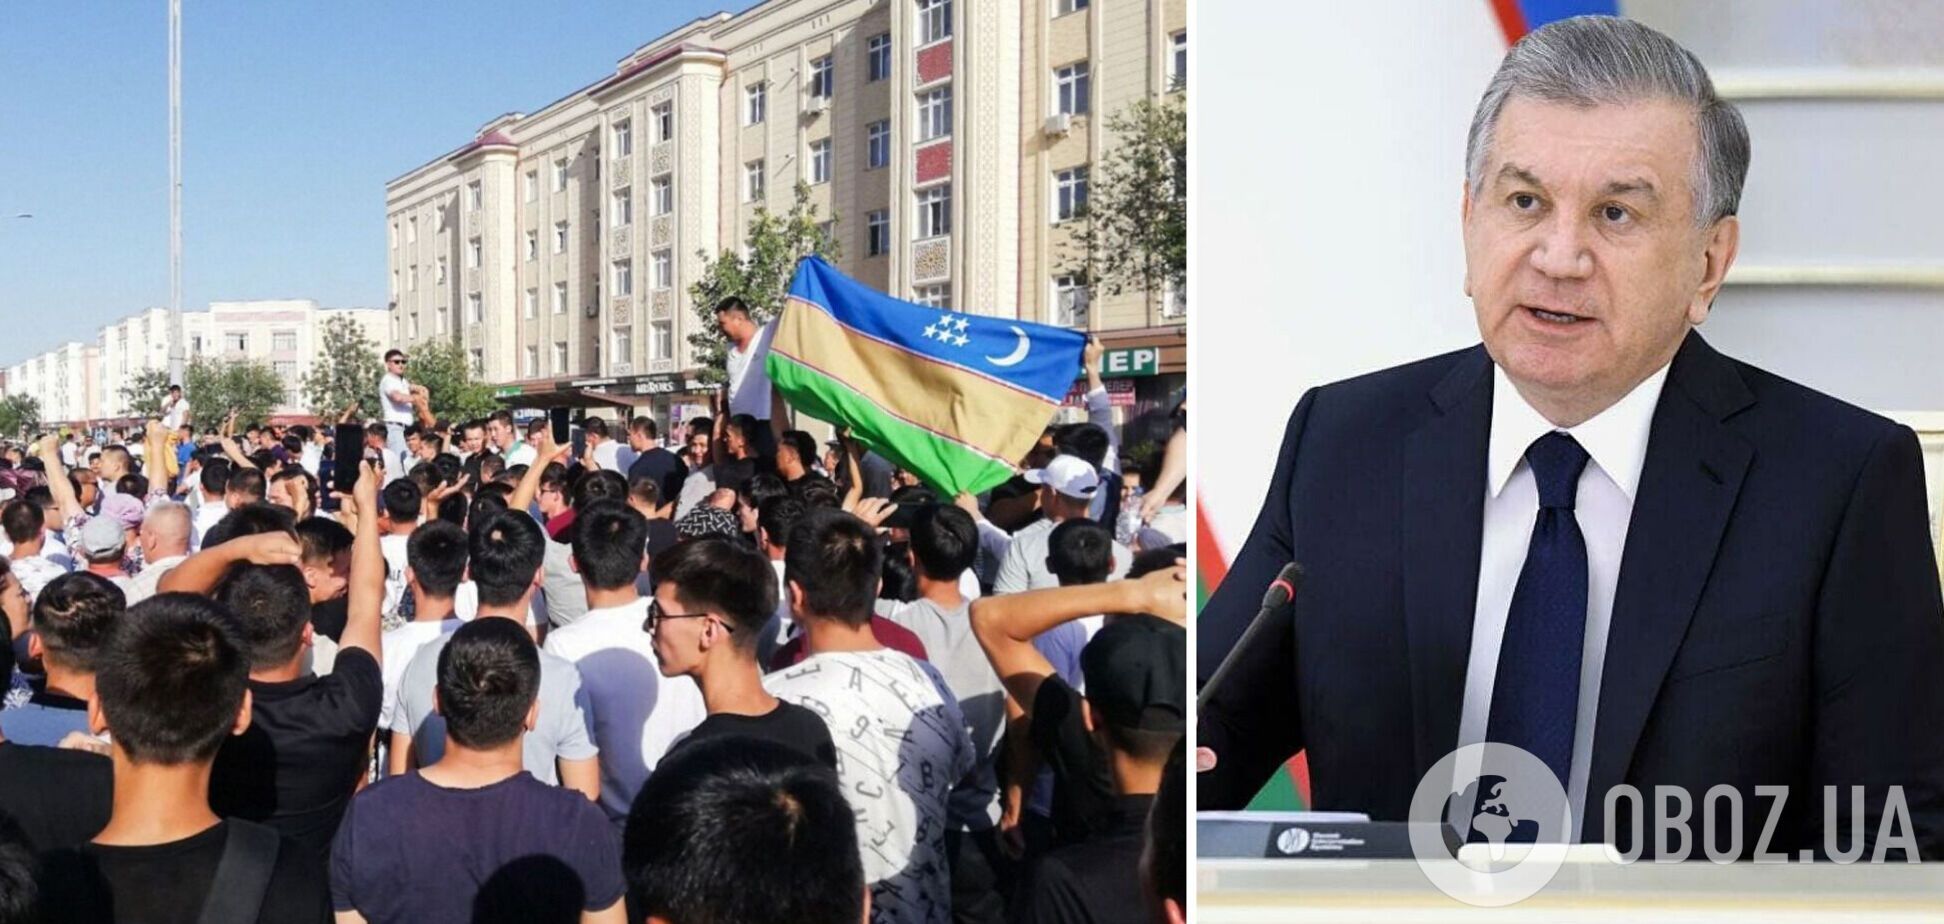 Протести в Узбекистані: президент запропонував не вносити поправки до конституції щодо суверенітету Каракалпакстану